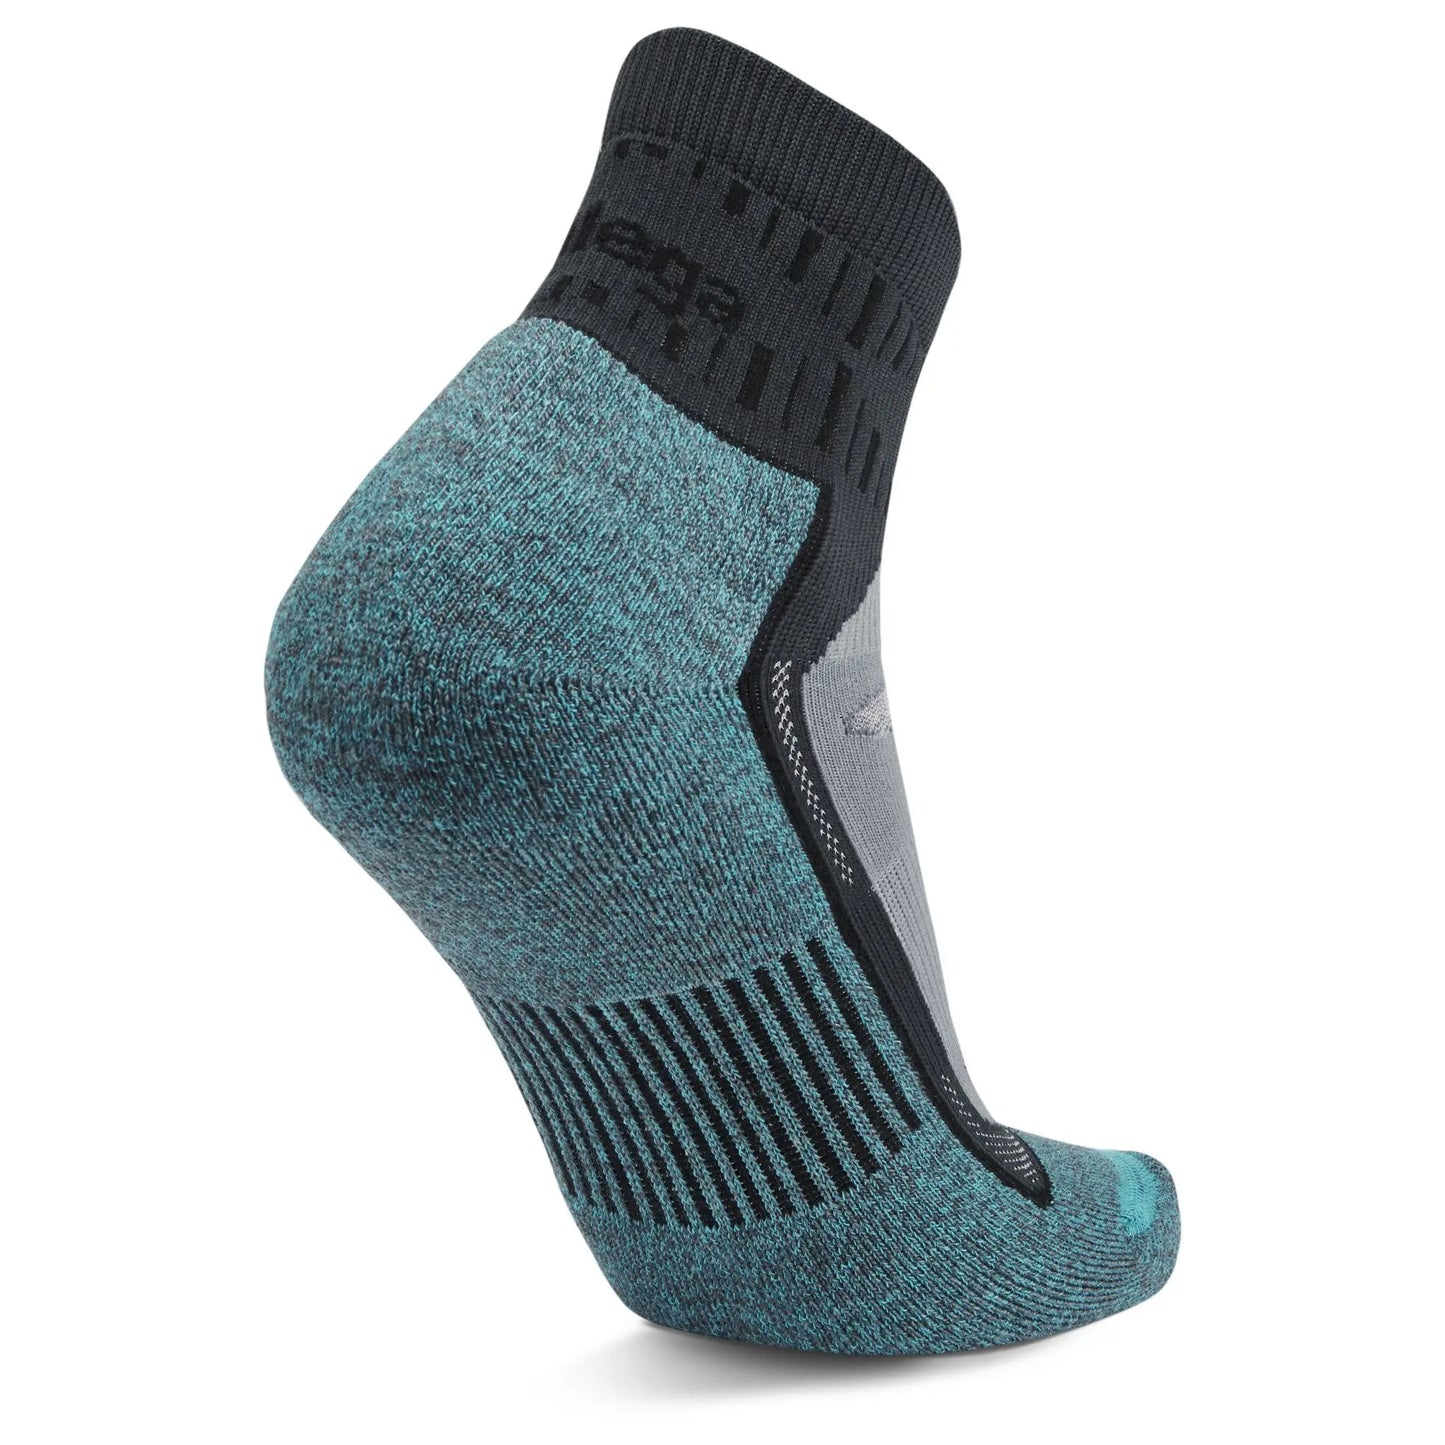 Balega Blister Resist Quarter Sock - Grey/Blue